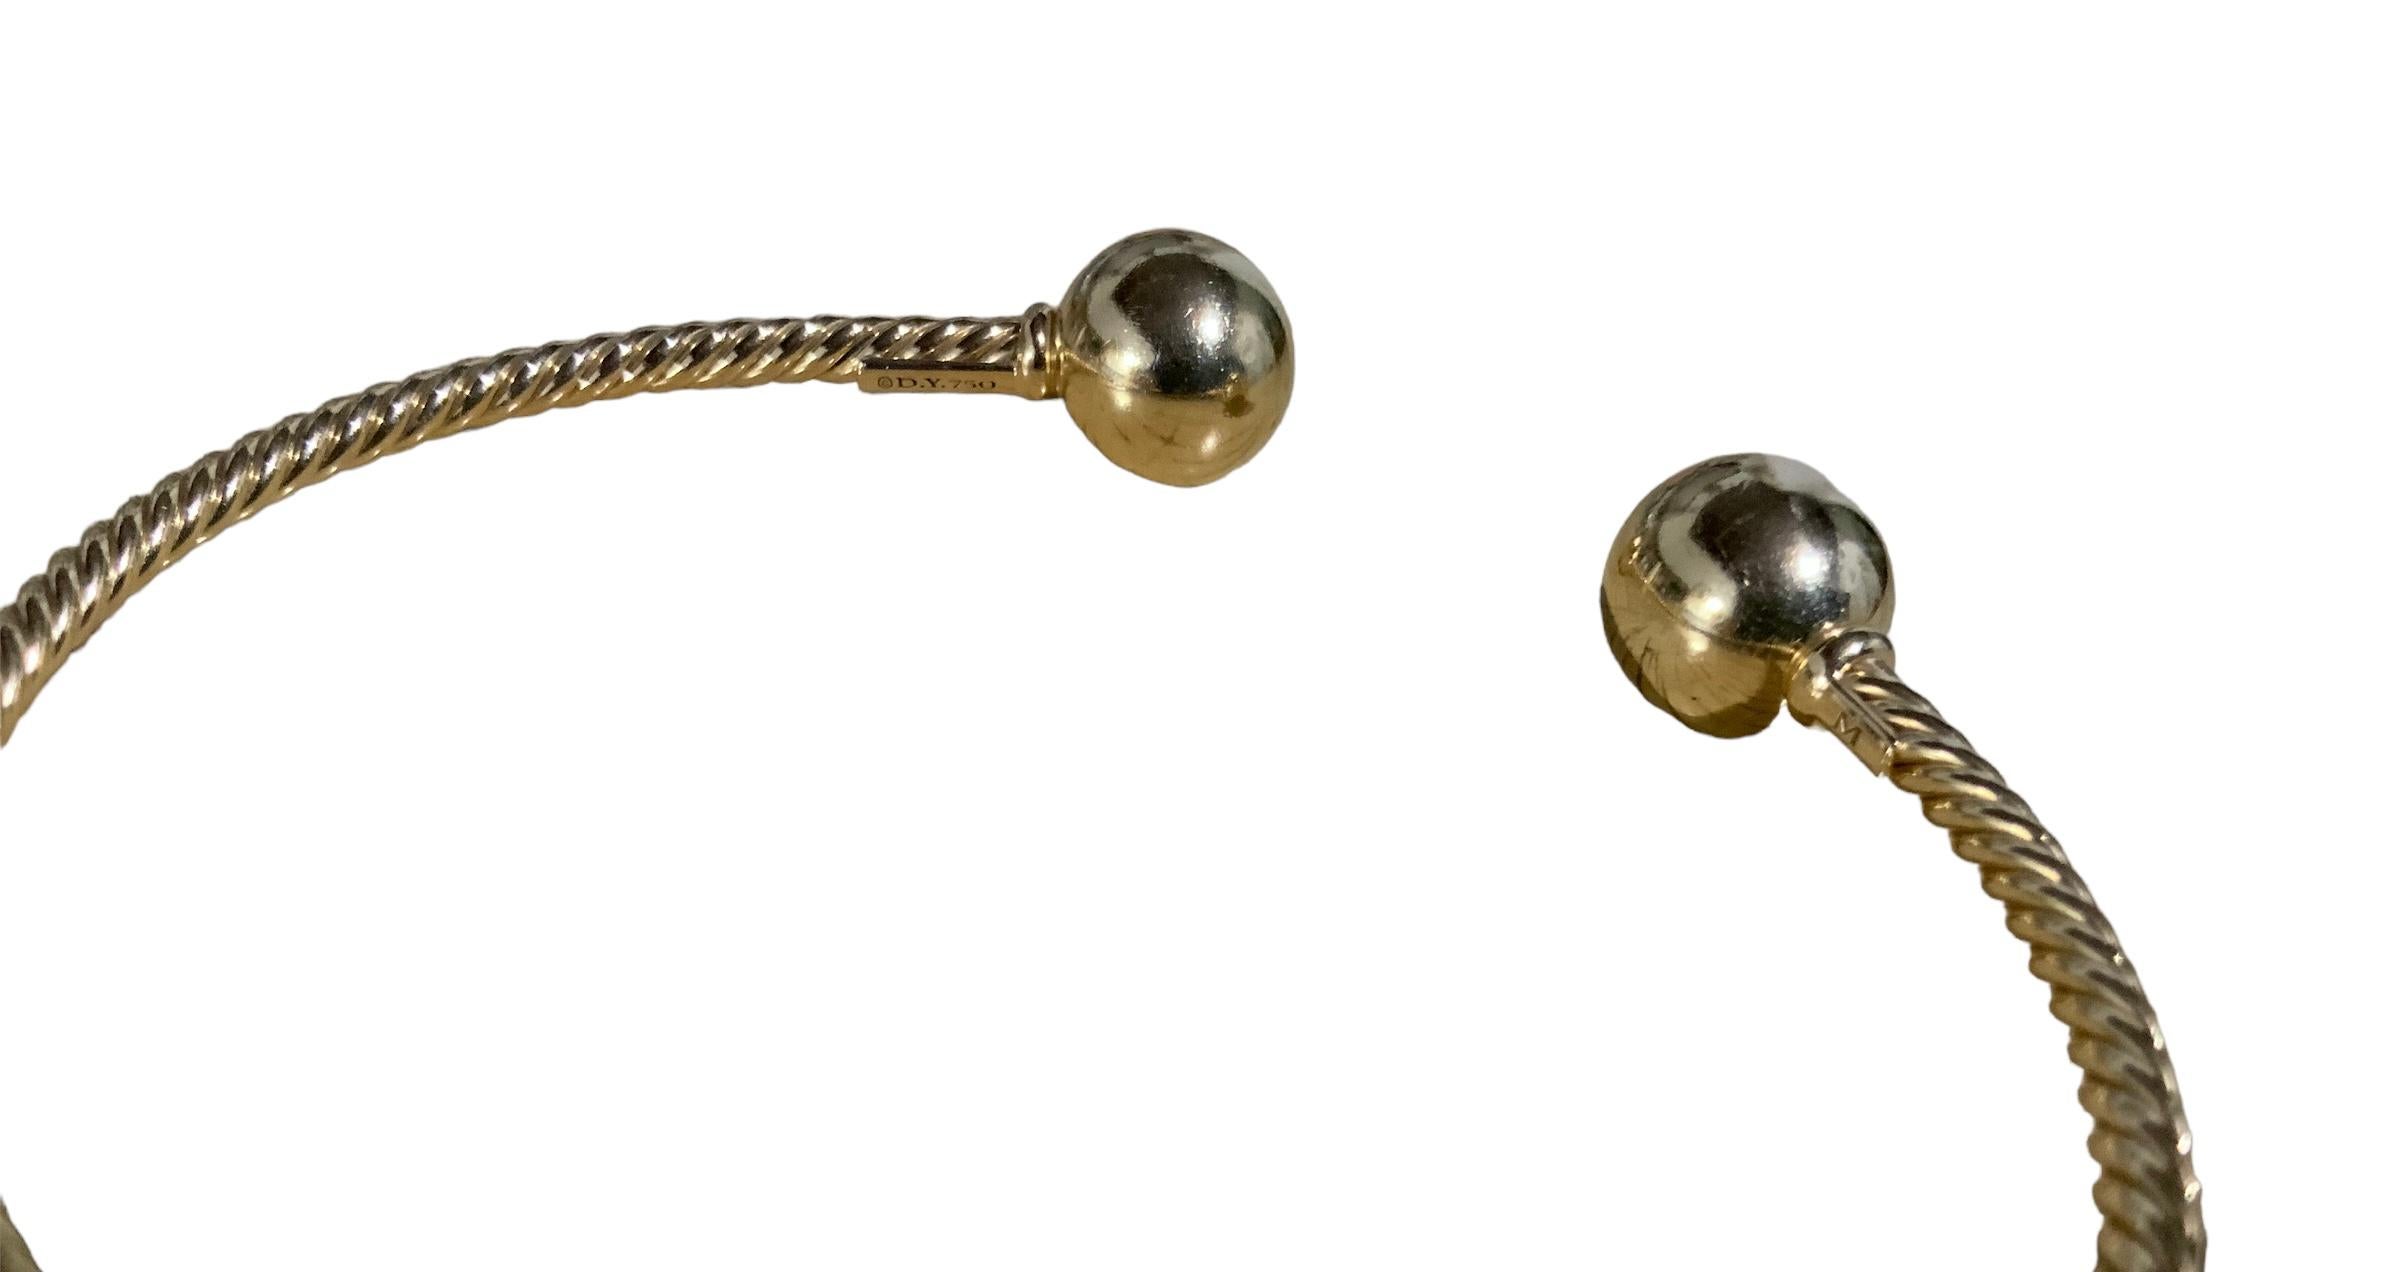 Il s'agit d'un jaune 18K  Bracelet en or David Yurman Solari, avec perles et corde. Il est poinçonné DY 750 d'un côté et M de l'autre.